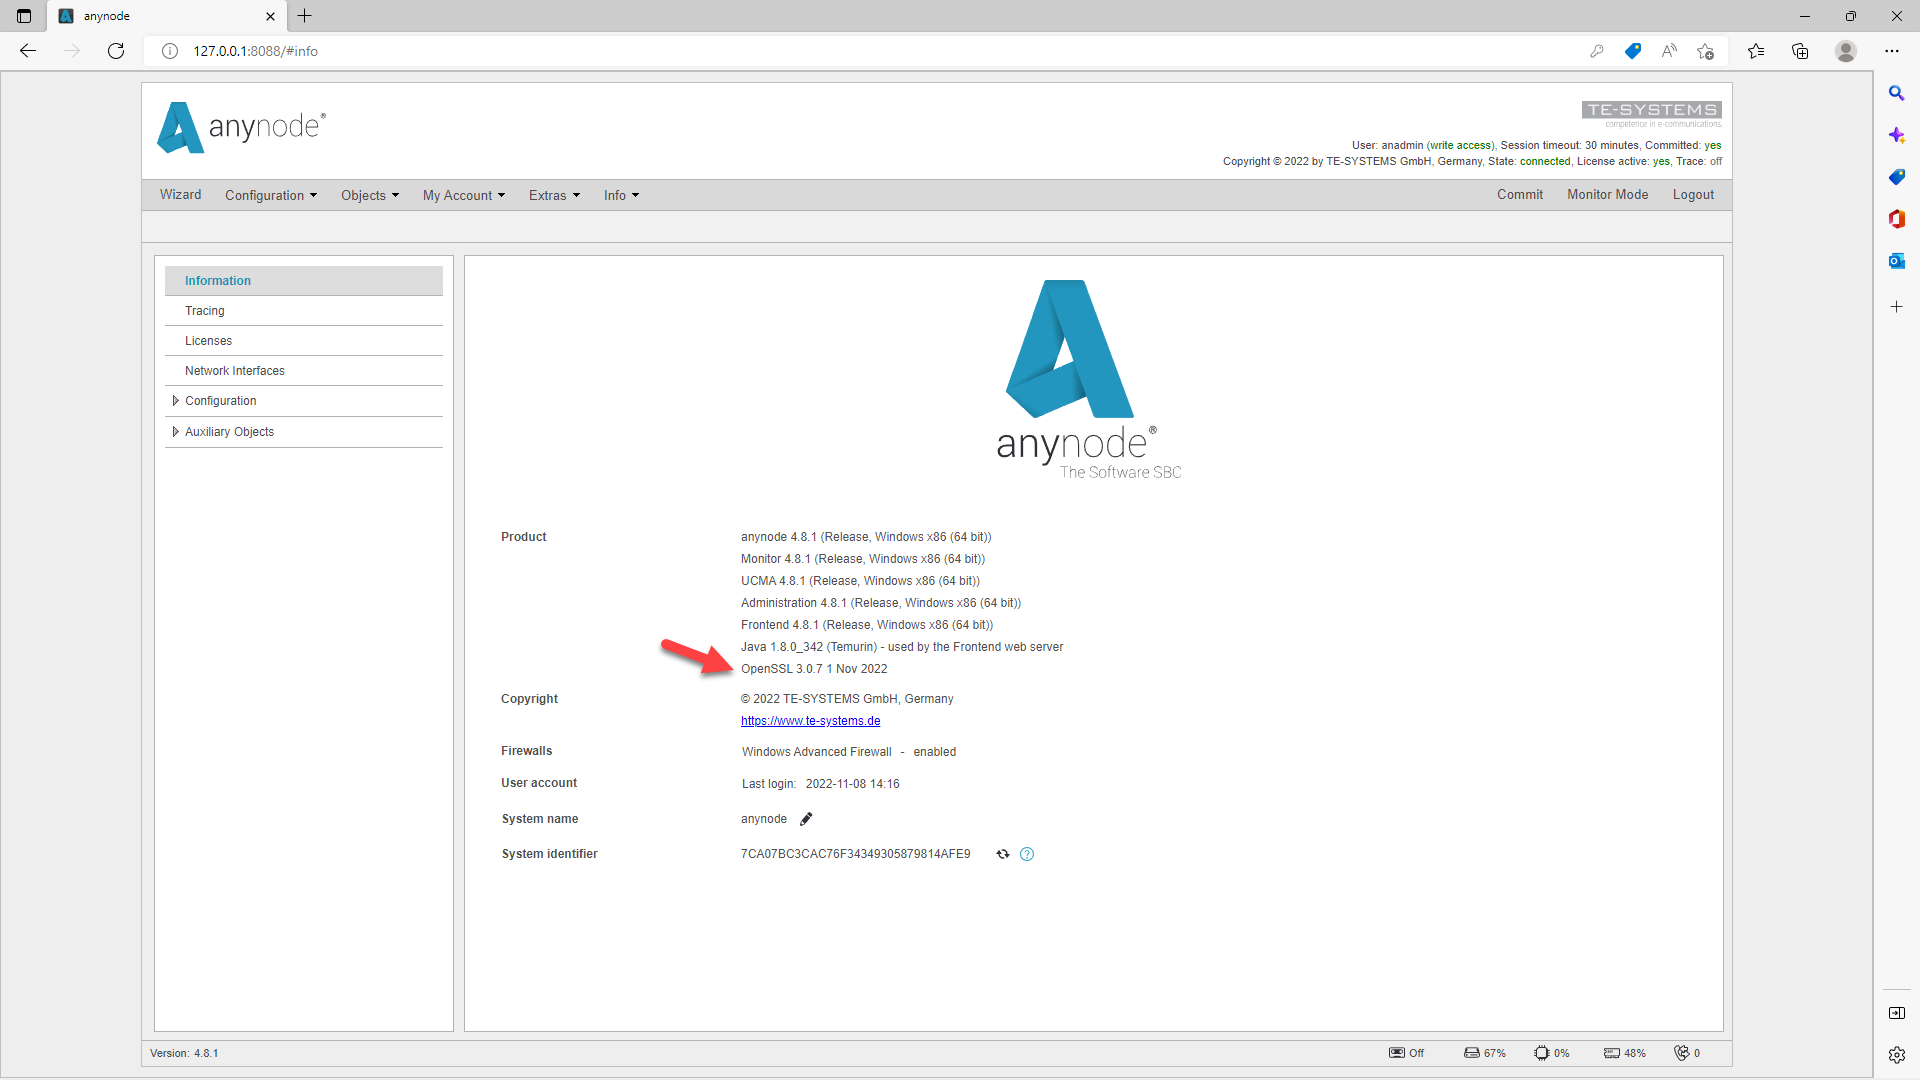 Screenshot: La pantalla de inicio ofrece una visión general de las versiones de los diferentes servicios que componen anynode.